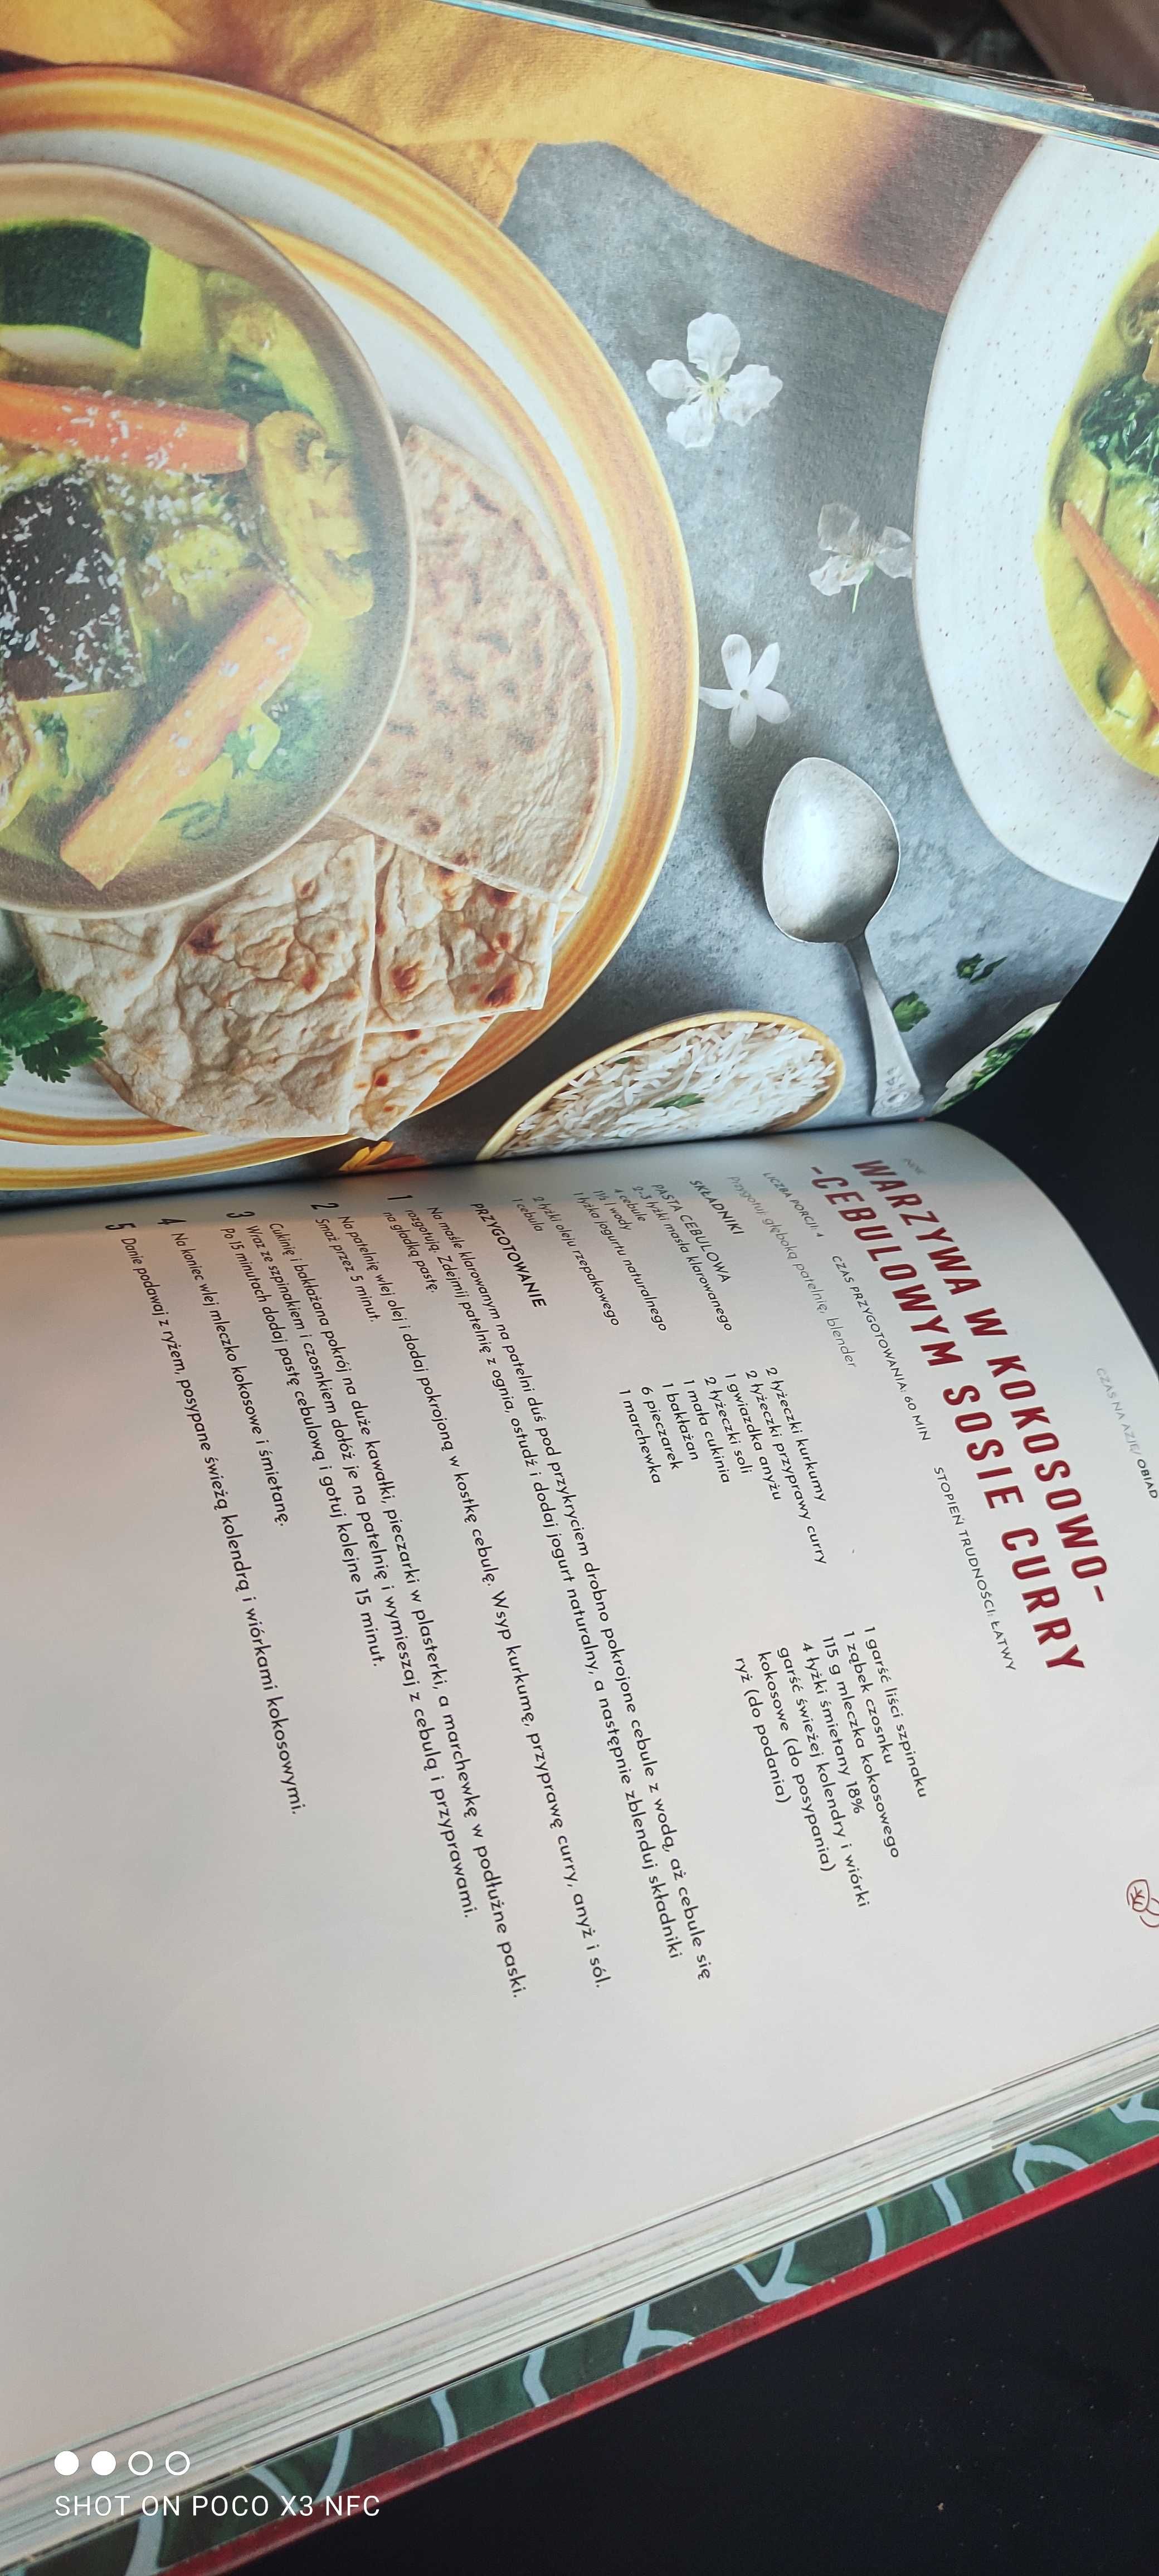 Książka  CZAS NA AZJĘ  przepisy kuchni azjatyckiej  NOWA